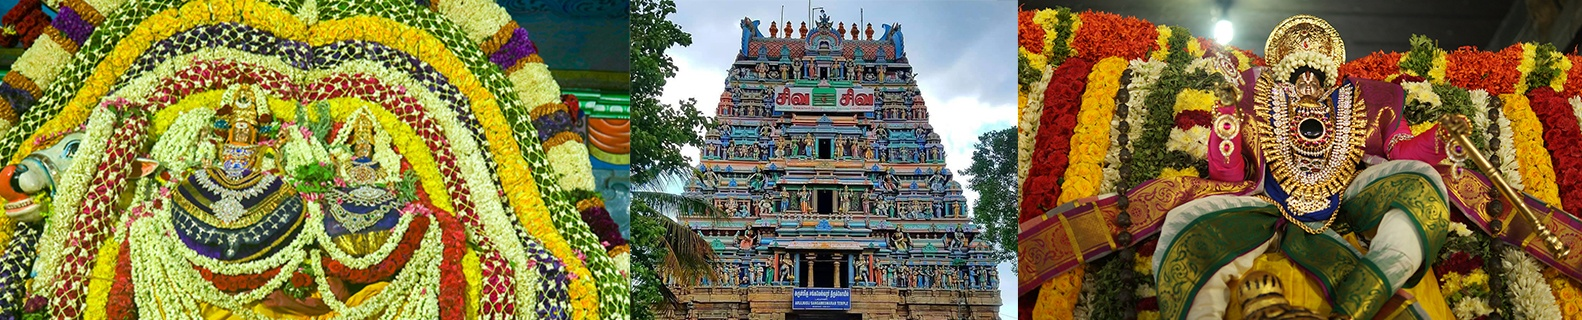 Rajagopuram/